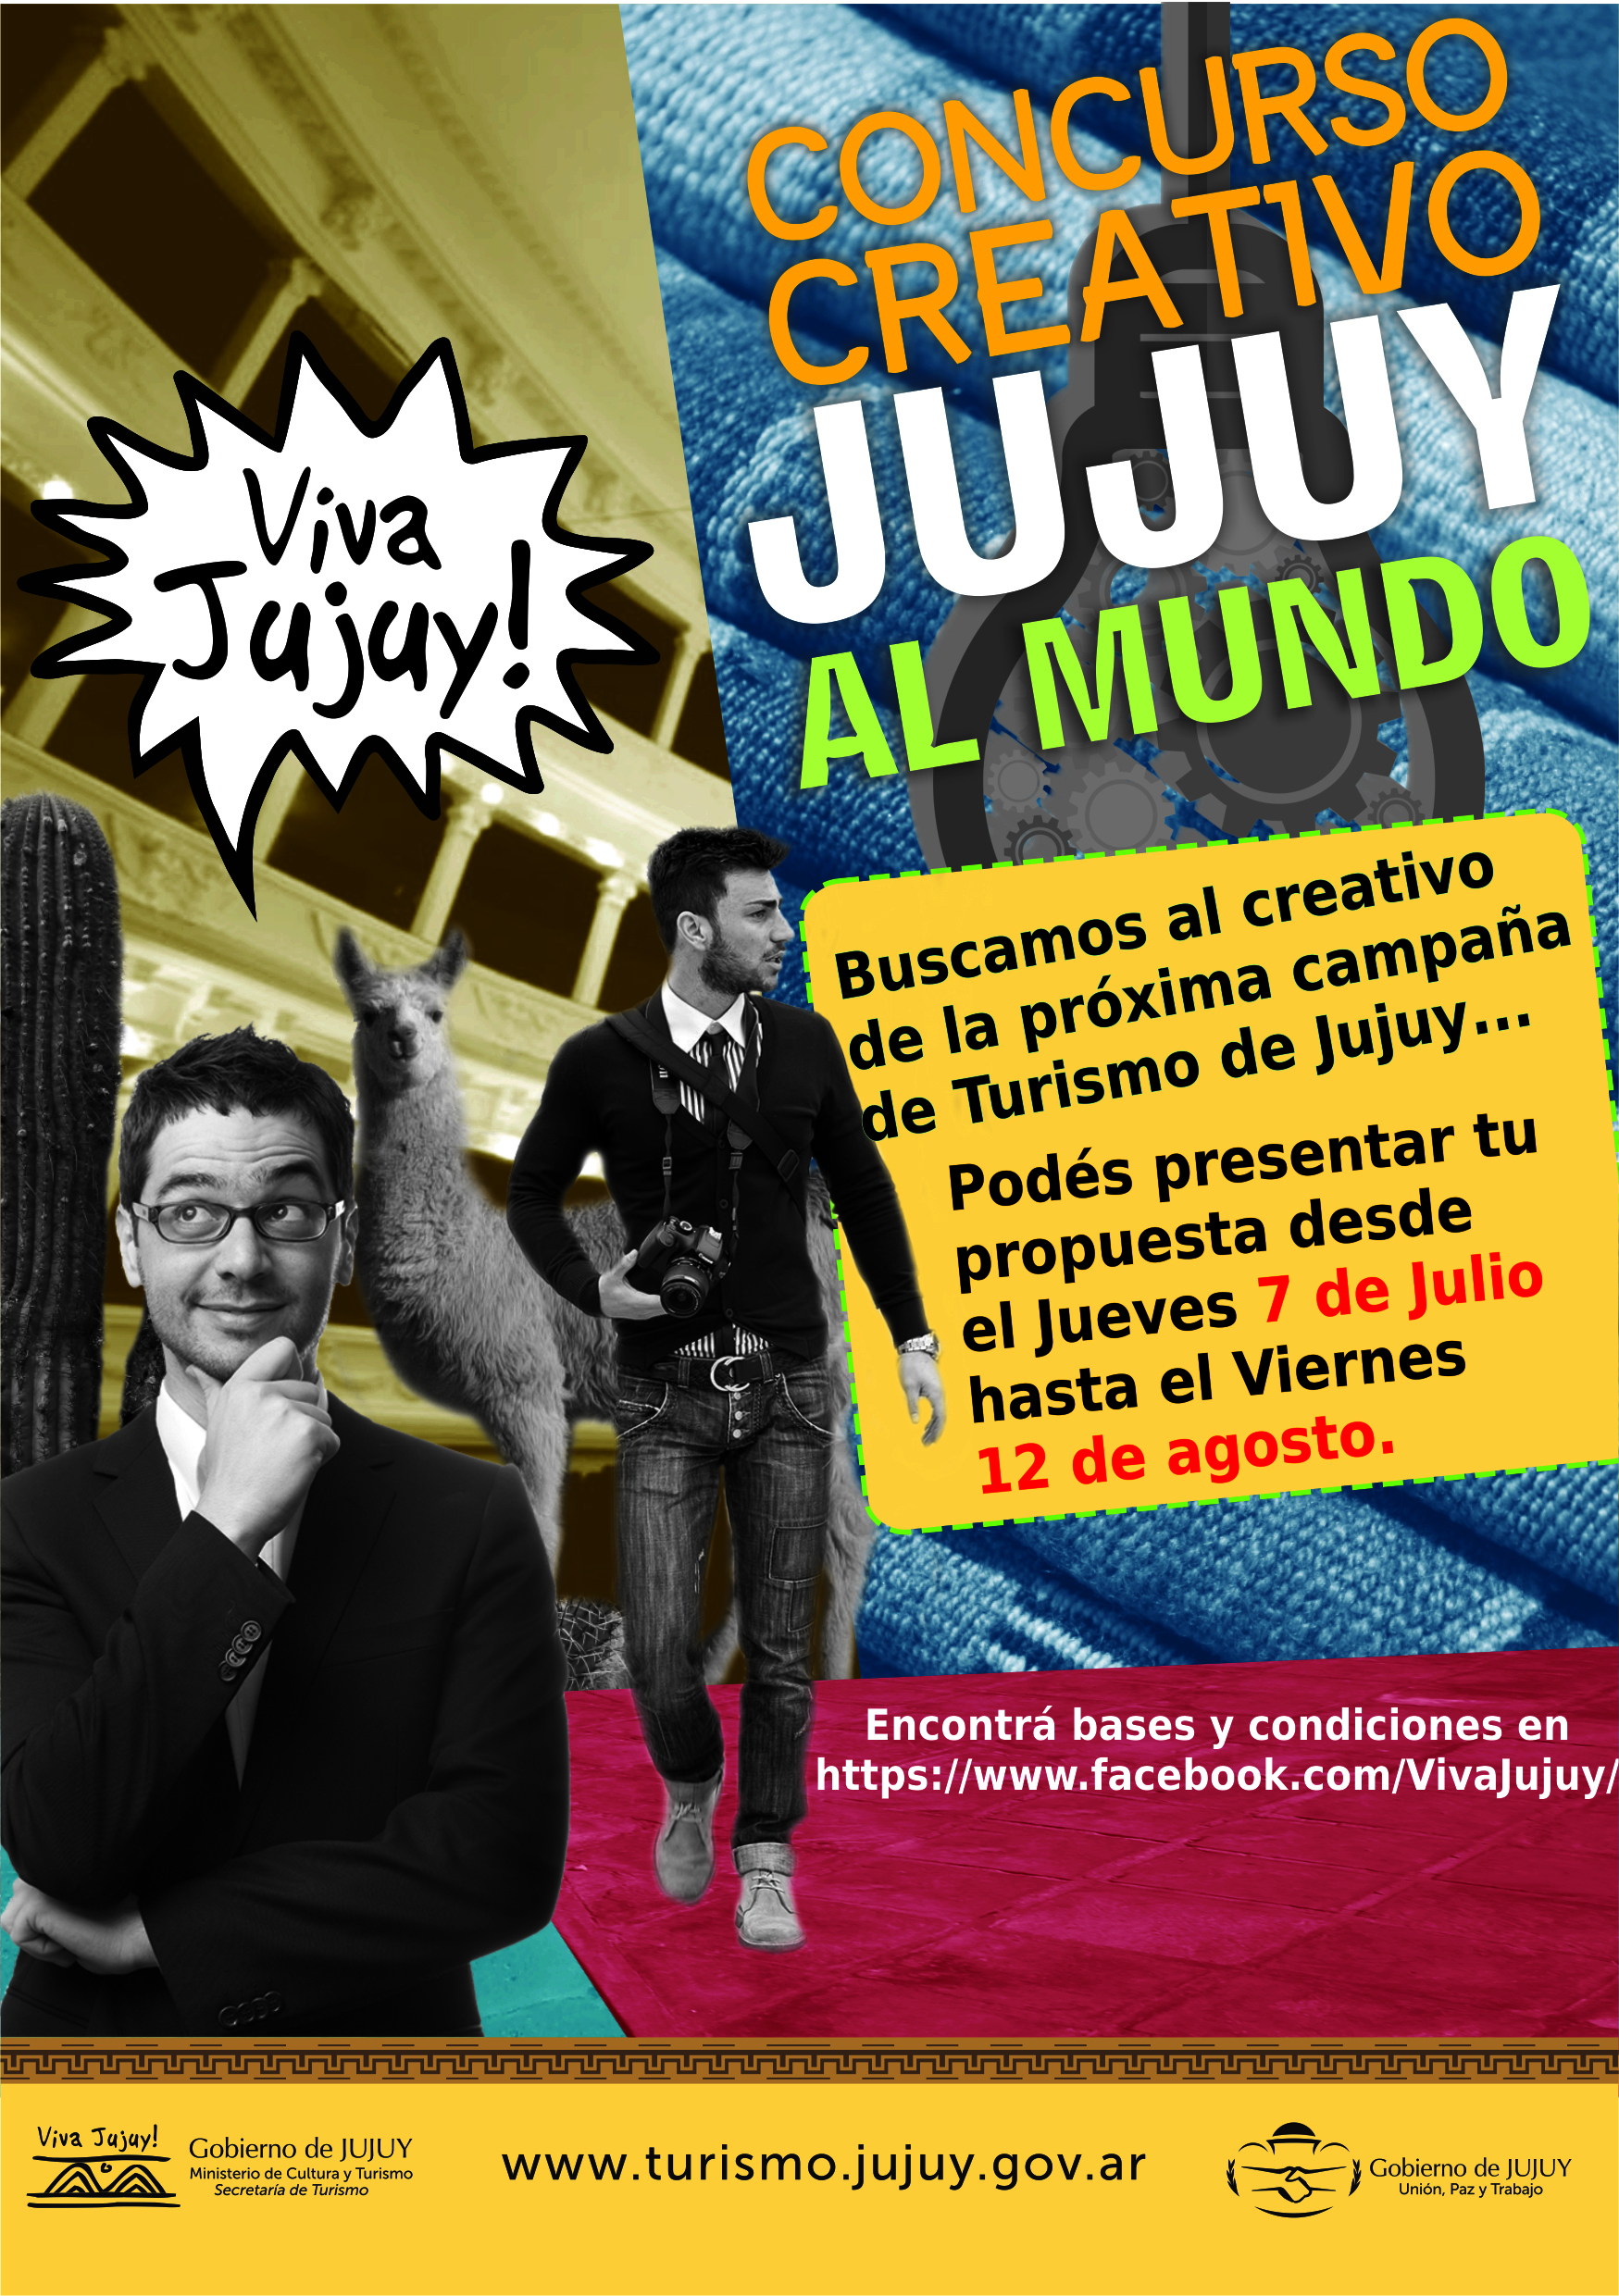  Hasta el 12 de agosto lanzamiento del concurso creativo Jujuy al Mundo